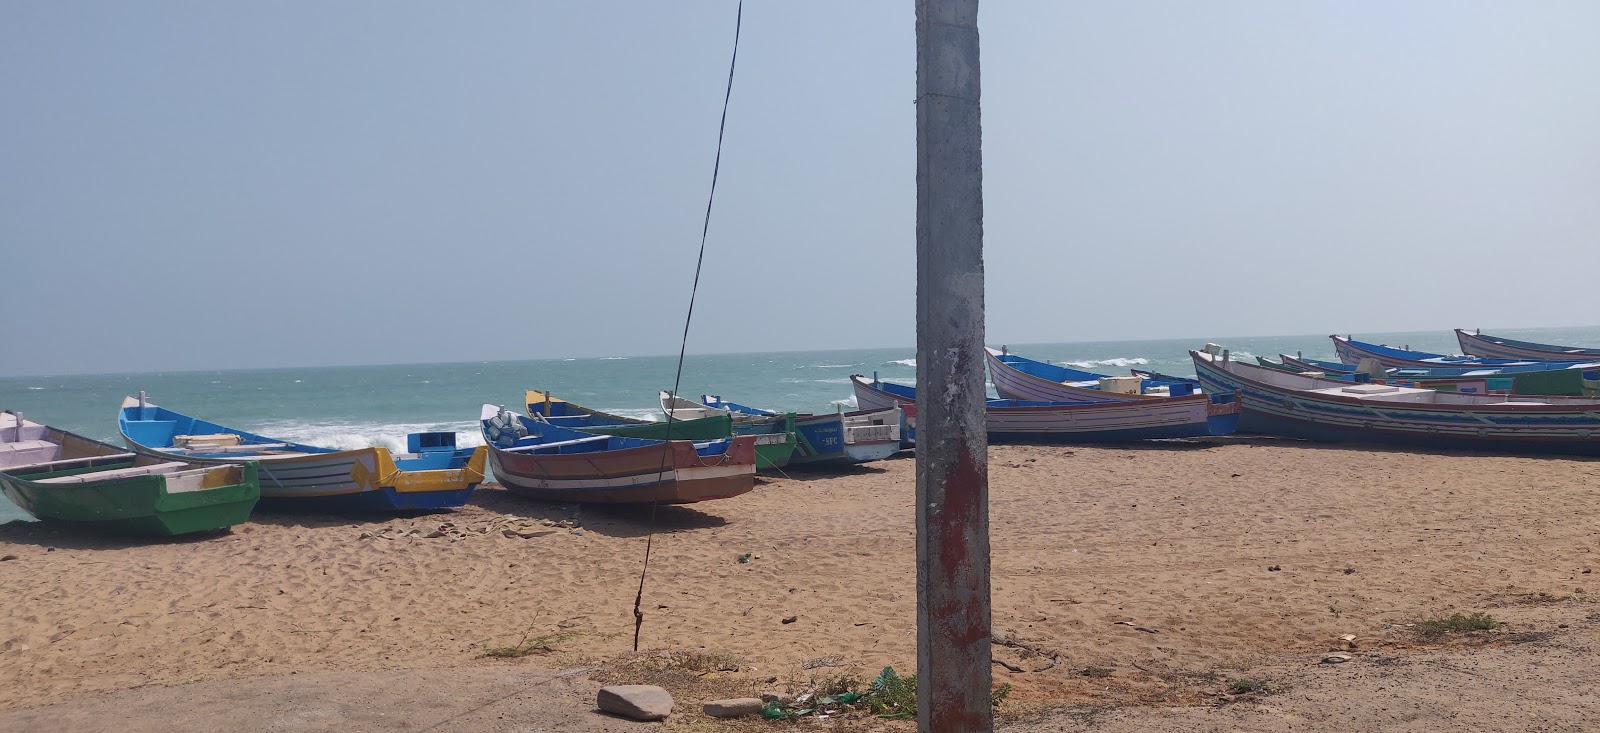 Foto de Thomaiyarpuram Beach com praia espaçosa